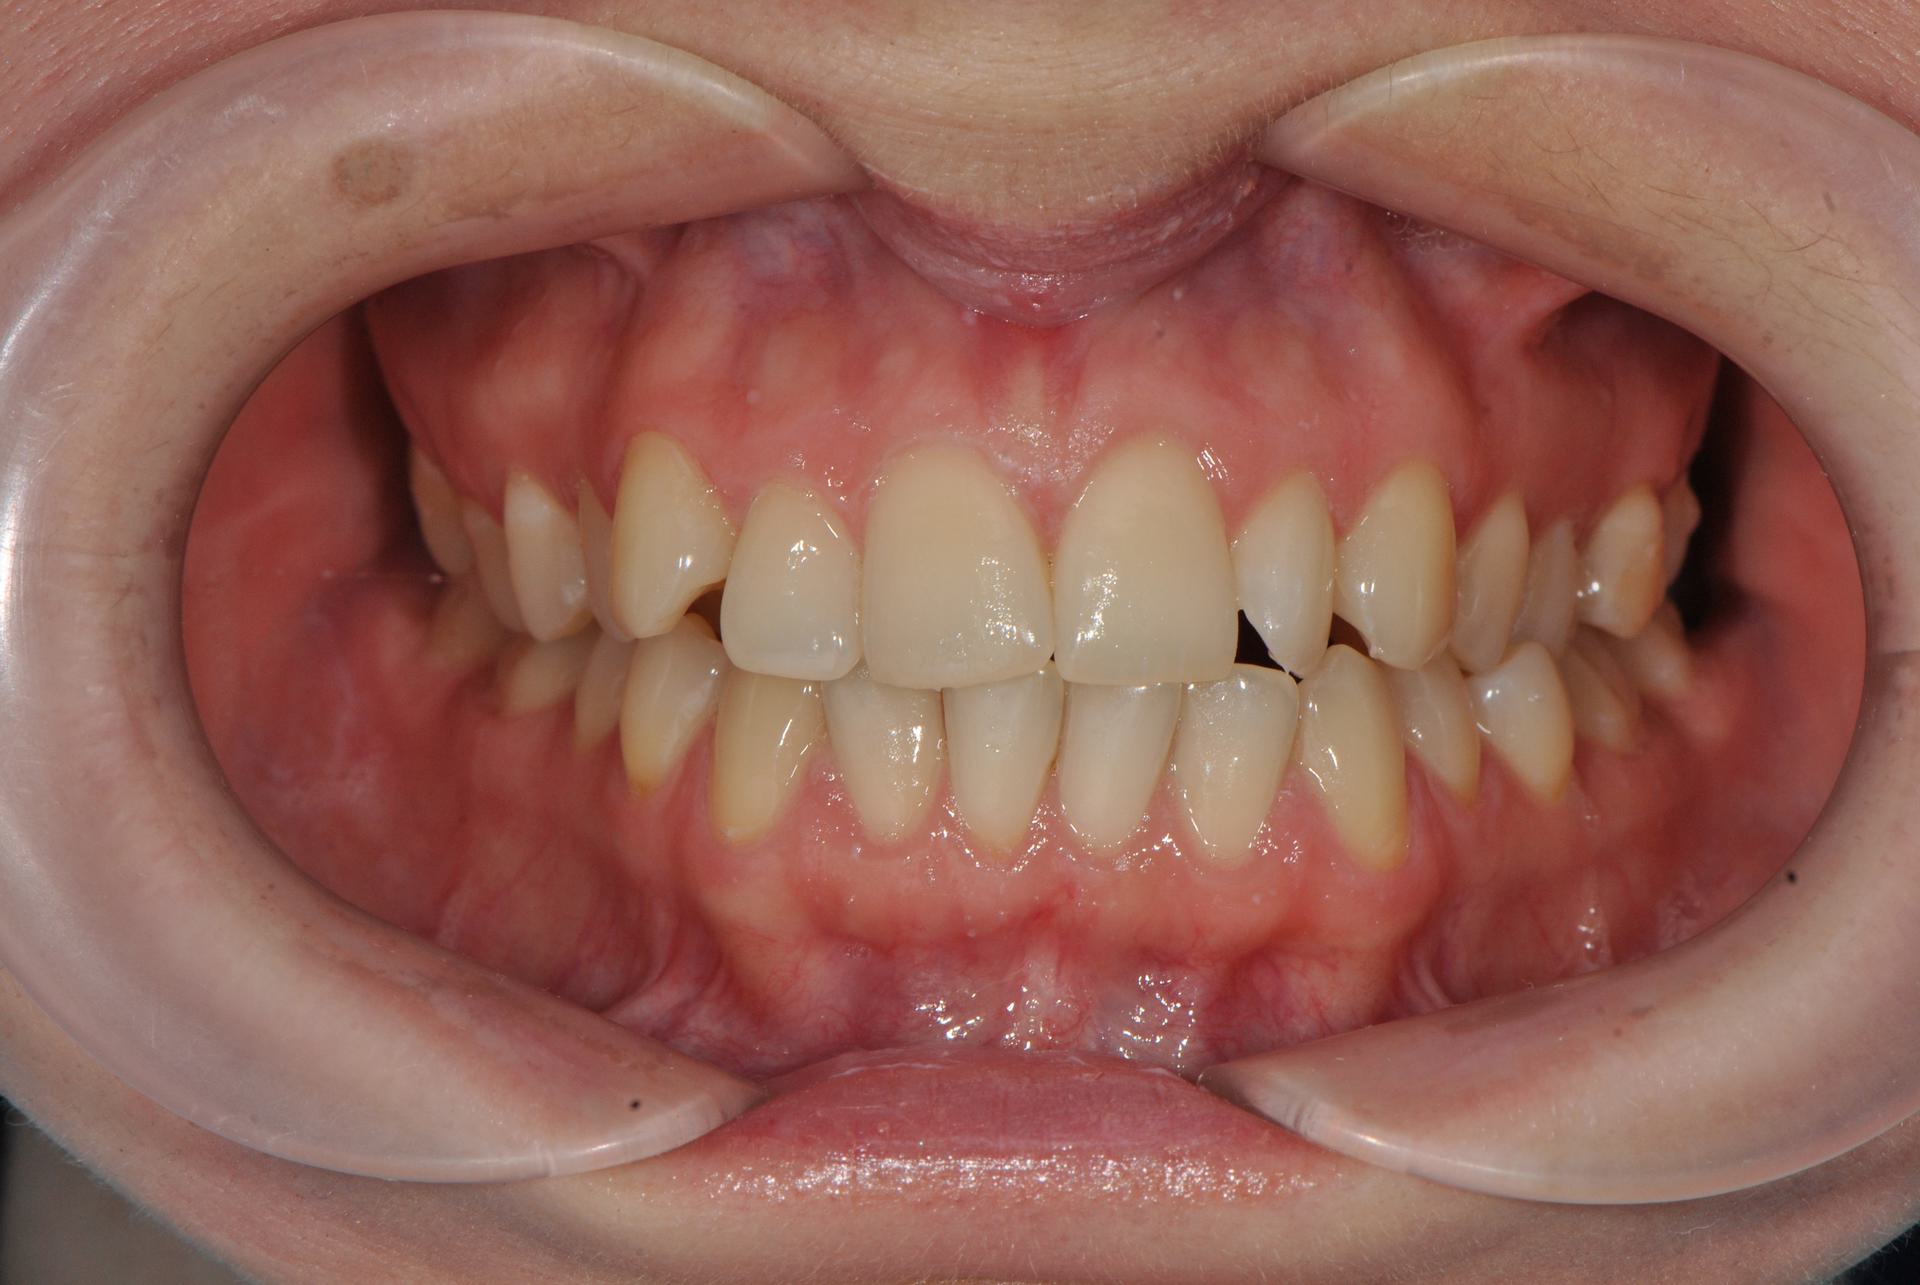 Нейтральная окклюзия. Cкученное положение фронтальной группы зубов на верхней и нижней челюстях. Женщина, 27 лет